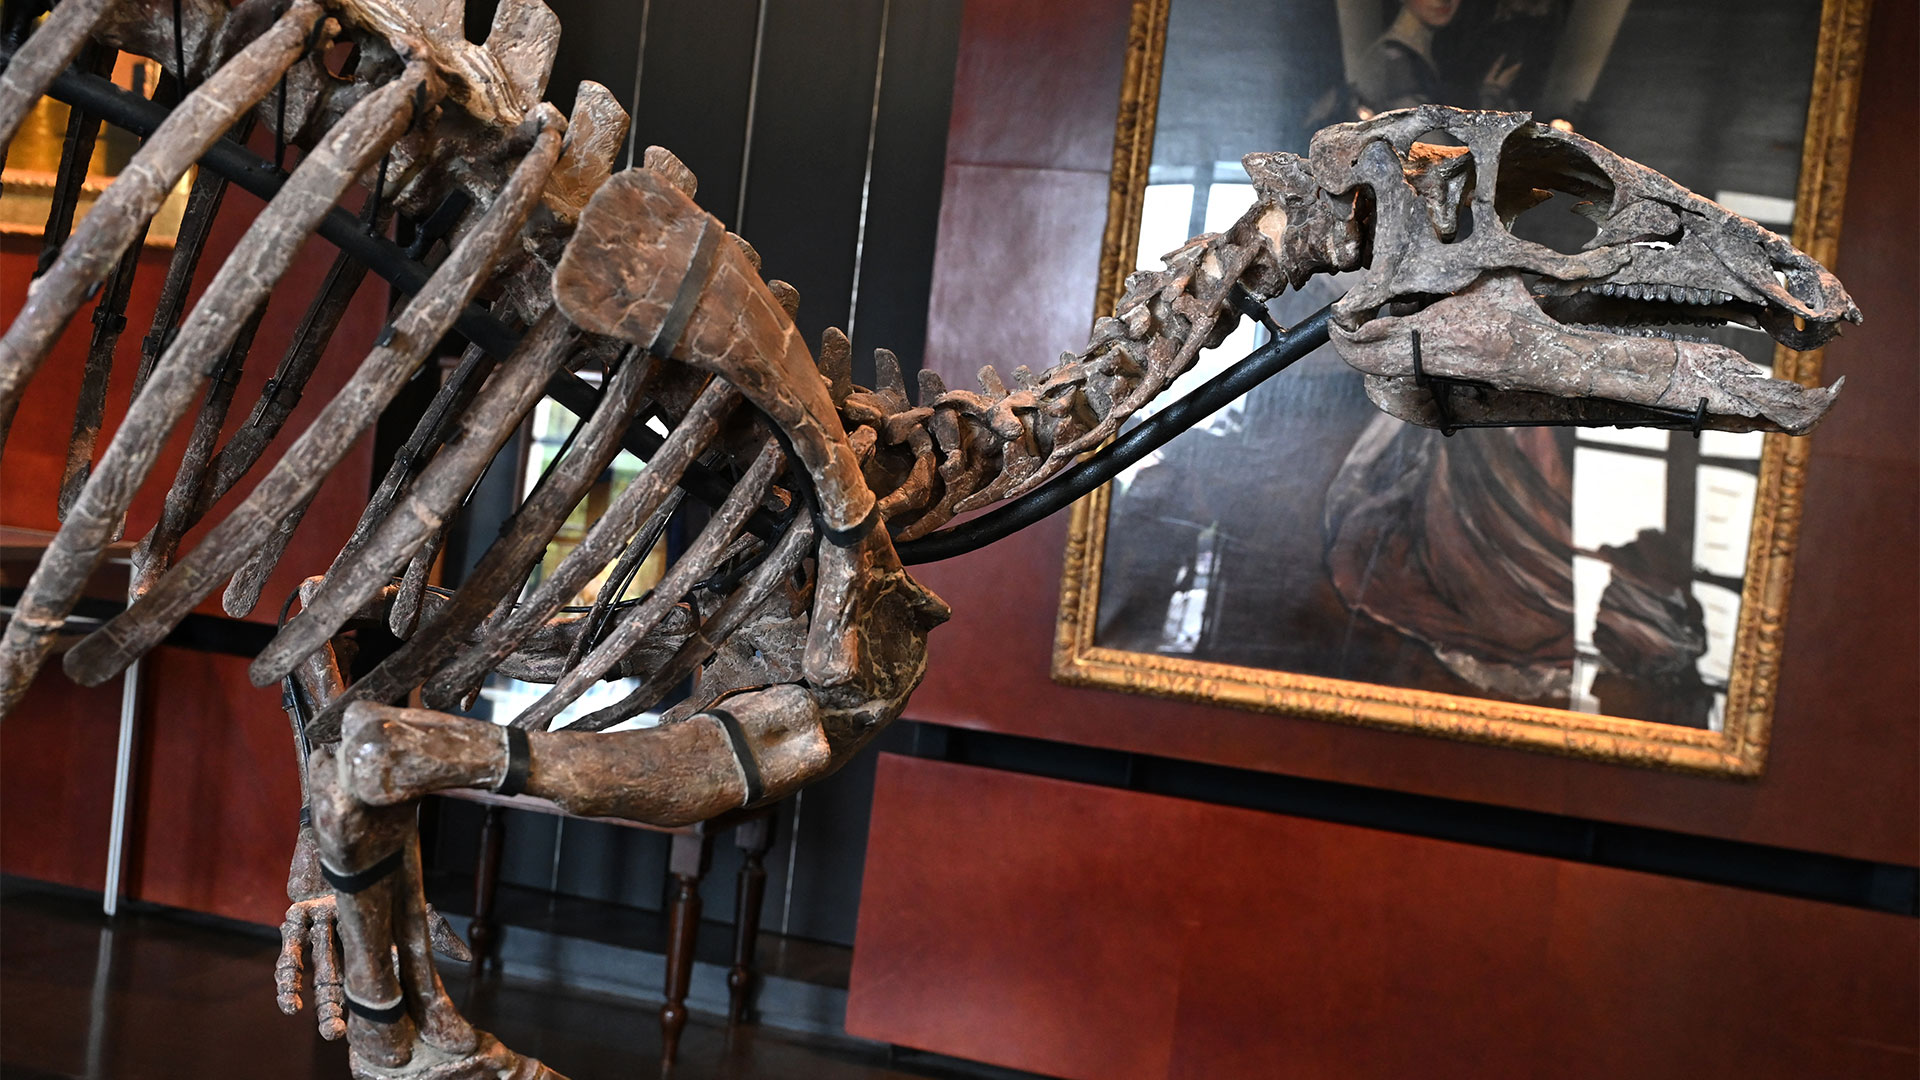 Este ejemplar de Camptosaurus era herbívoro y podía desplazarse de manera ágil y rápida sobre dos o cuatro patas. Podía alcanzar una velocidad de hasta 25 kilómetros por hora.